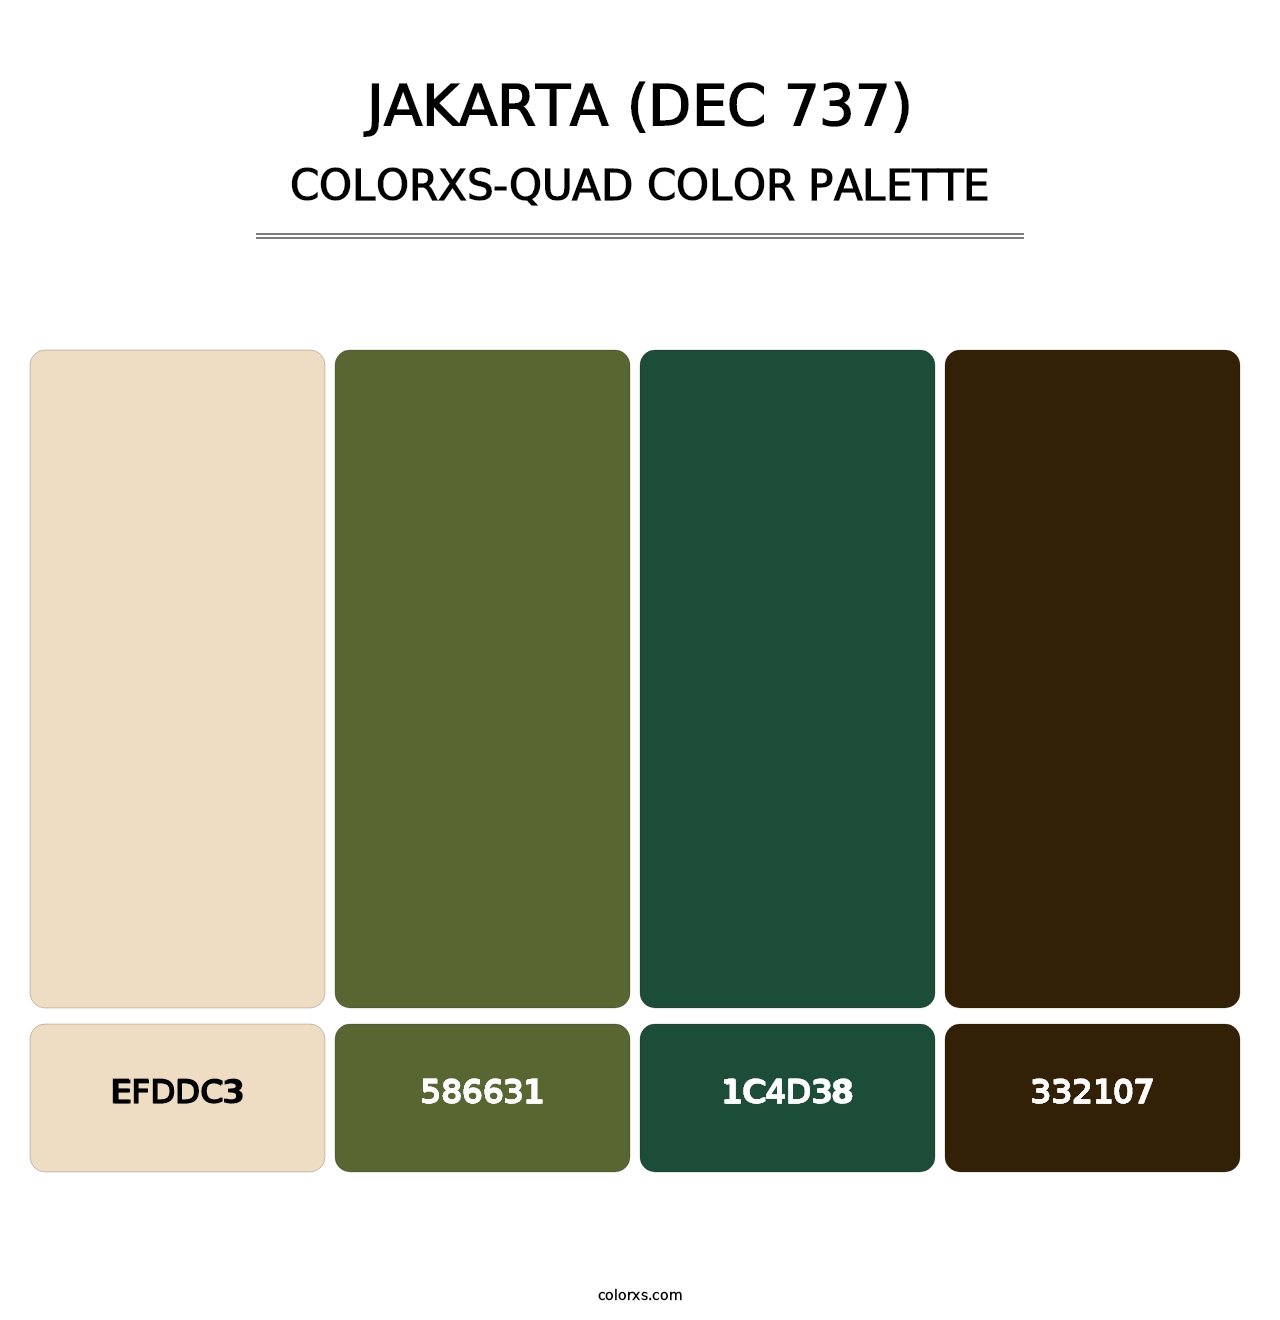 Jakarta (DEC 737) - Colorxs Quad Palette